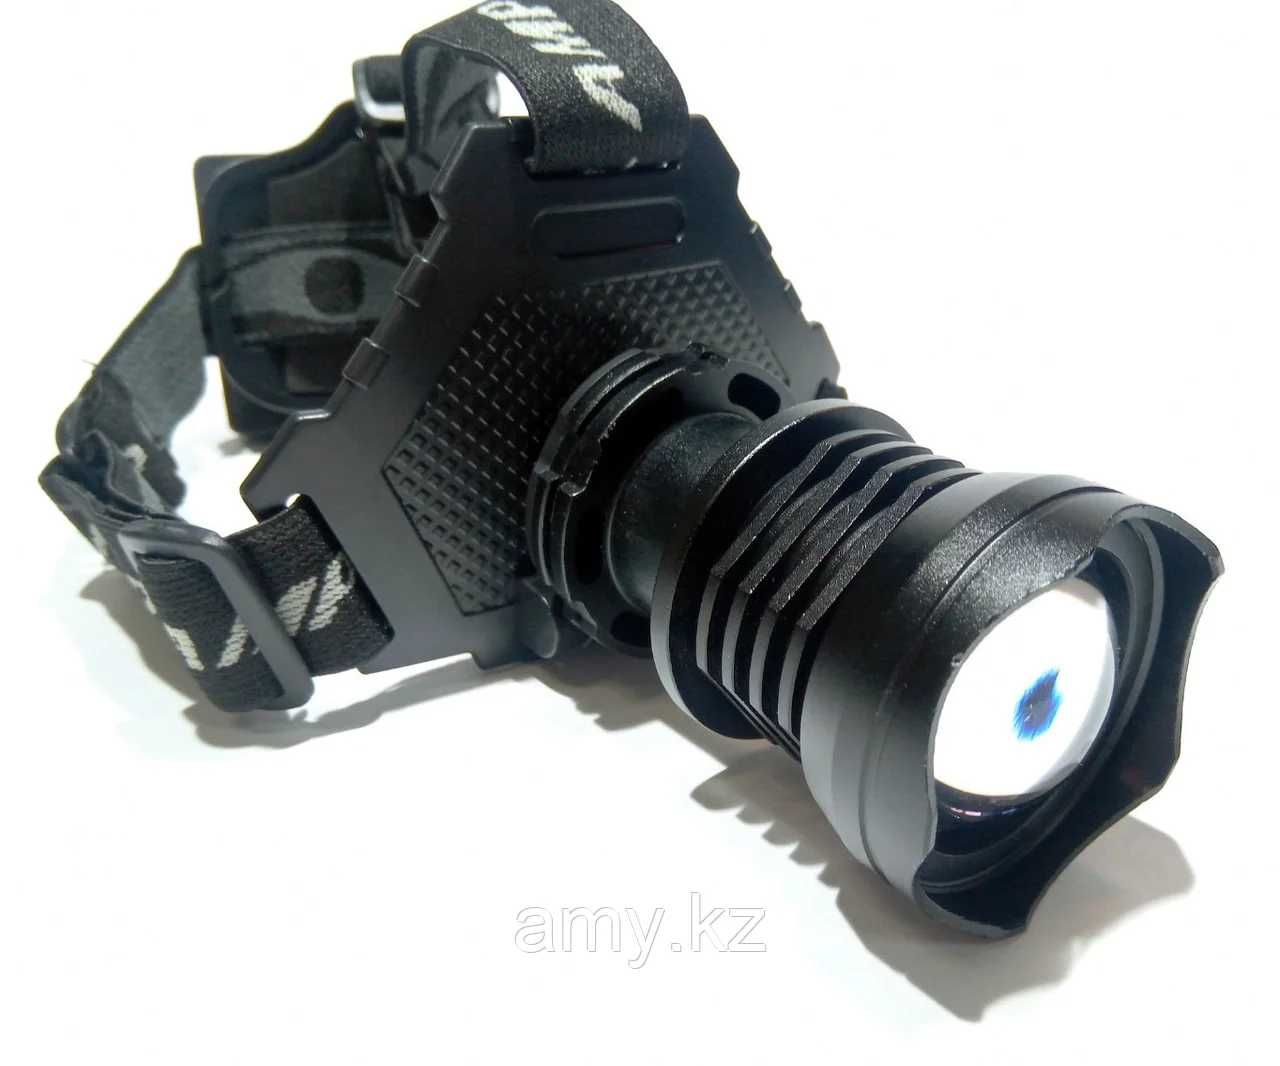 Налобный фонарь P70 Pro